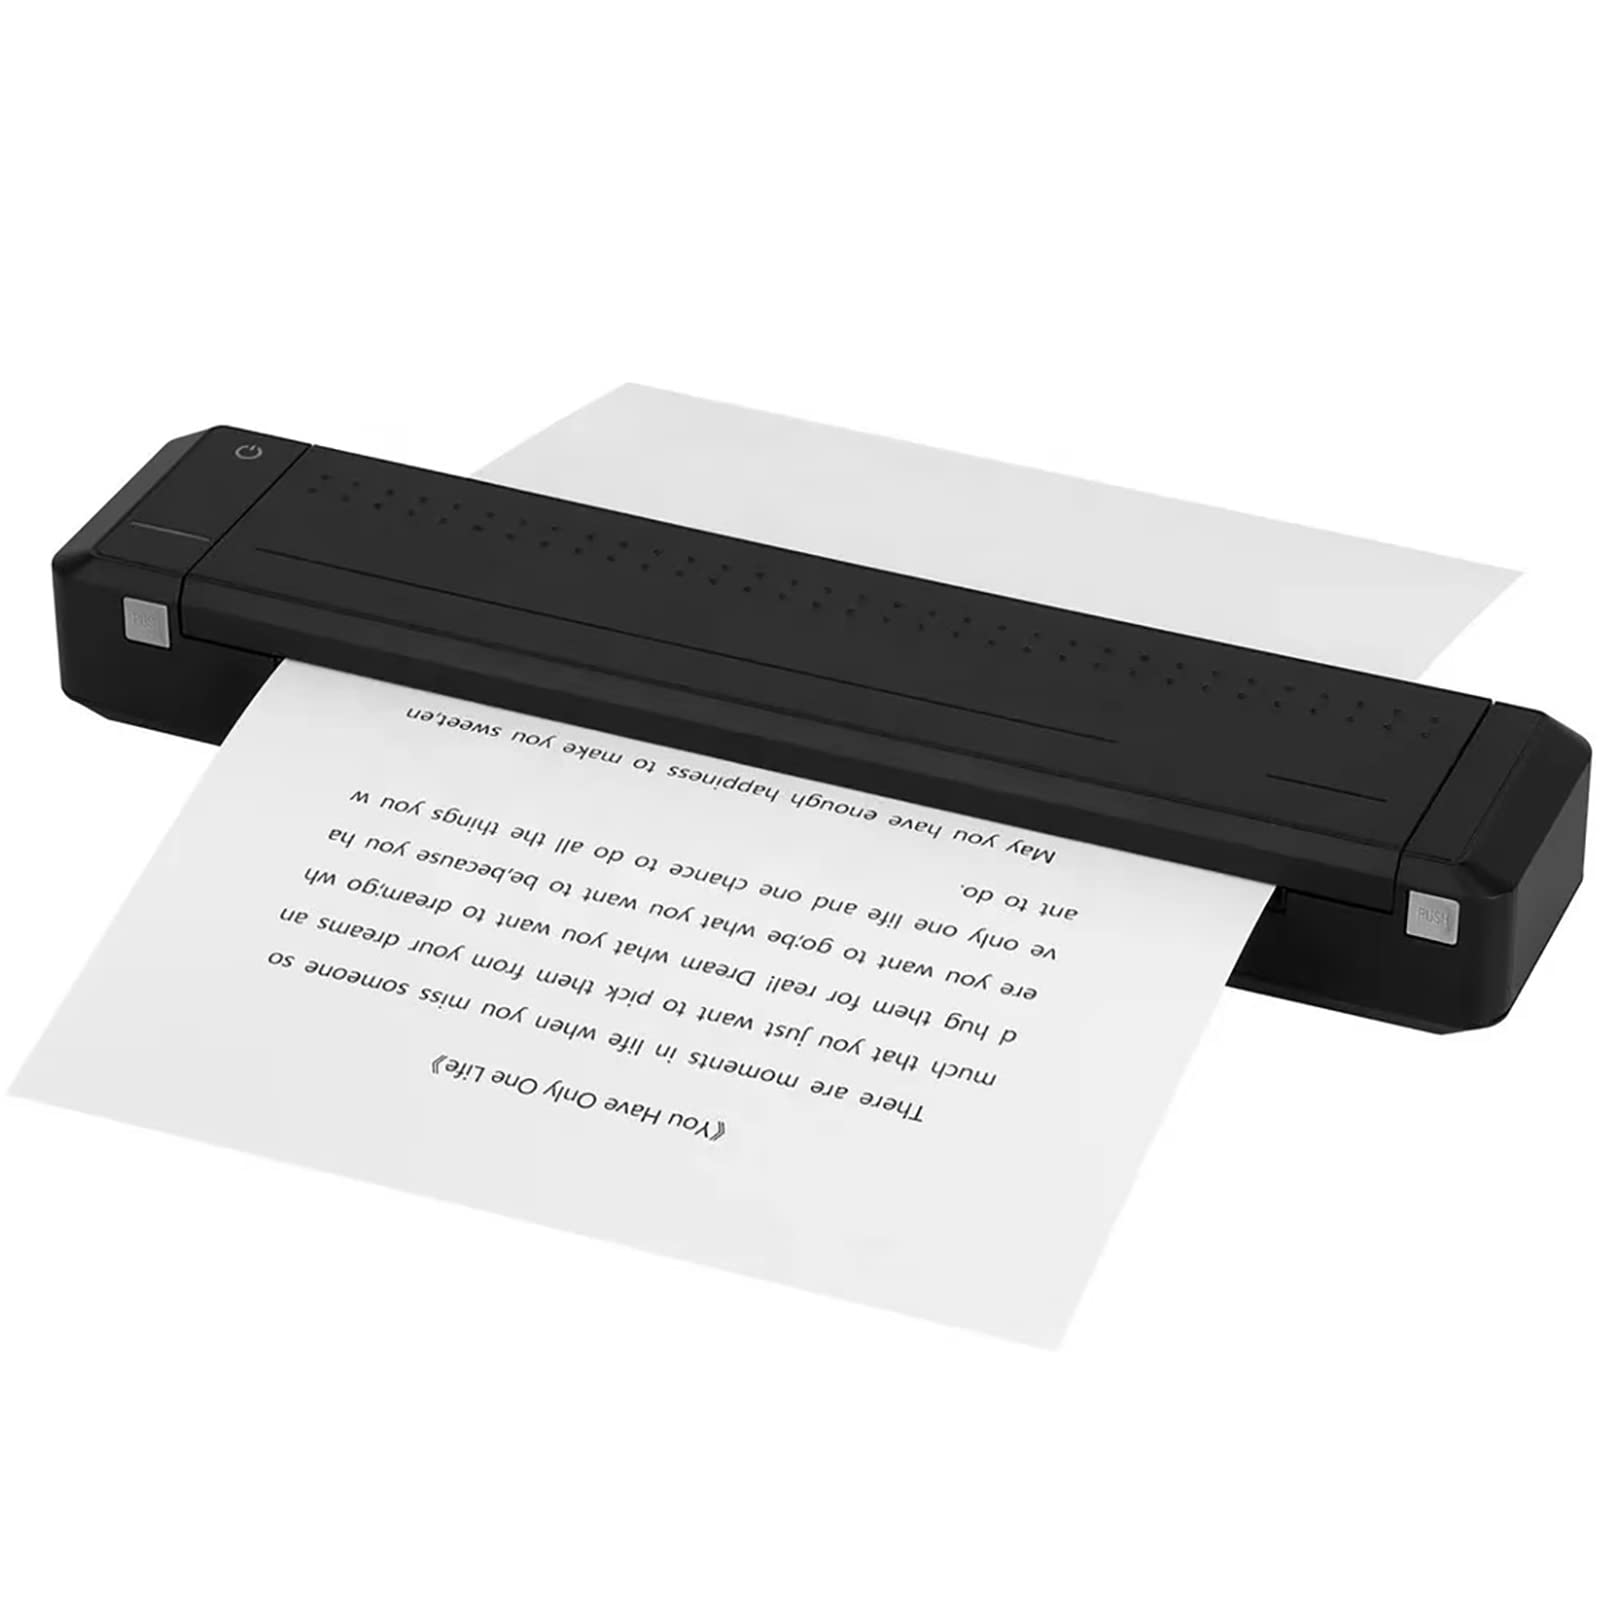 Tragbarer kabelloser Drucker für Reisen, Bluetooth-Thermodrucker ohne Tinte, Kleiner kompakter Drucker, unterstützt Thermopapier im Letter-Format von 8,5 x 11 Zoll, funktioniert mit Laptop,